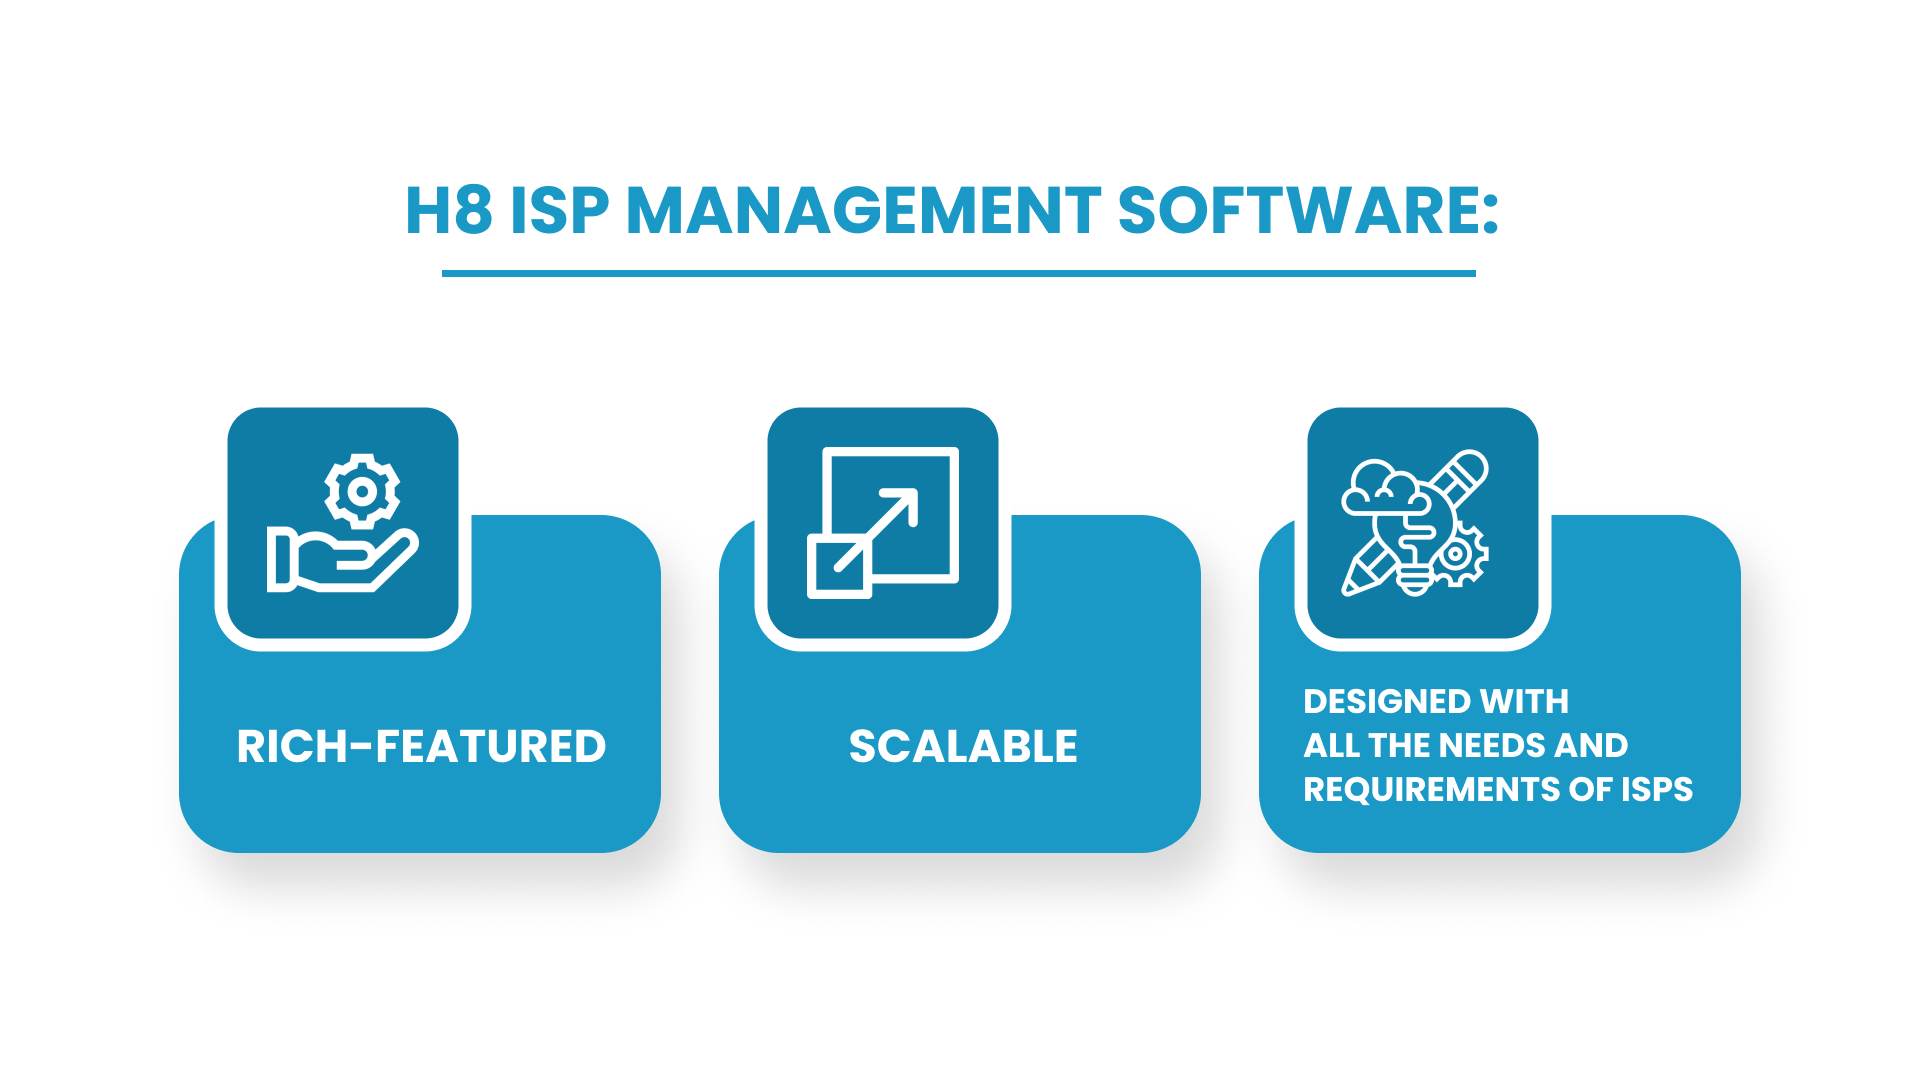 H8 ISP Management Software